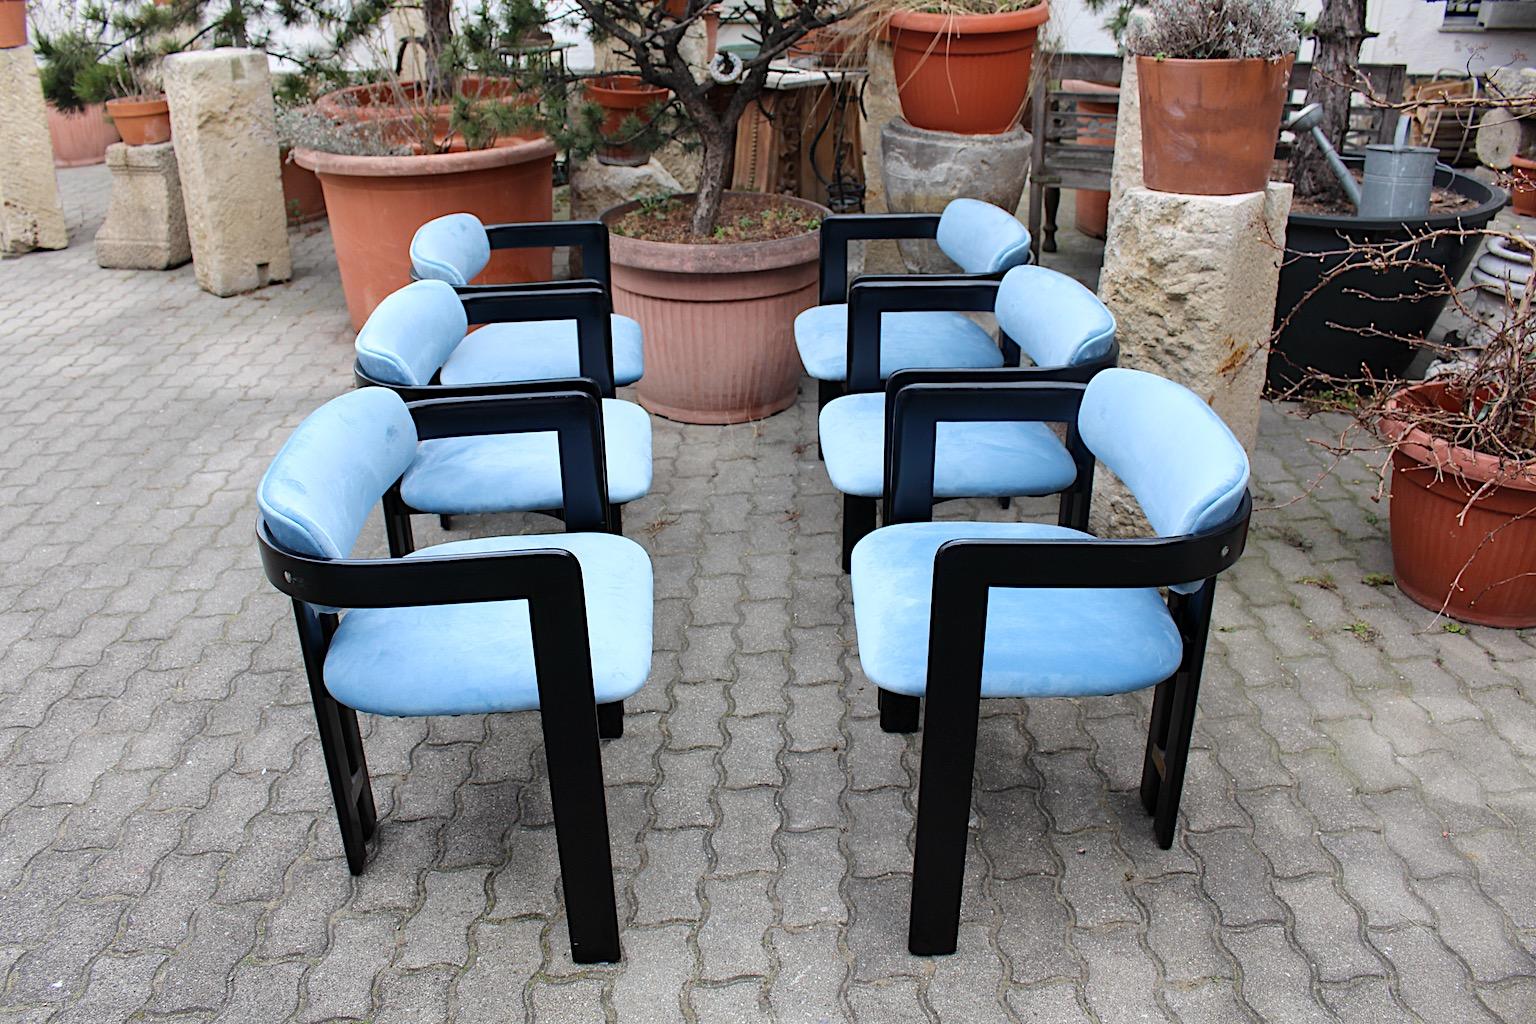 Mid-Century Modern Vintage skulpturale Satz von 6 Stühlen Pamplona von Augusto Savini für Pozzi Italien um 1965.
Sechs Esszimmerstühle Modell Pamplona aus schwarz lackiertem Holz und neu gepolstertem Sitz und Rückenlehne in blauem Farbton mit